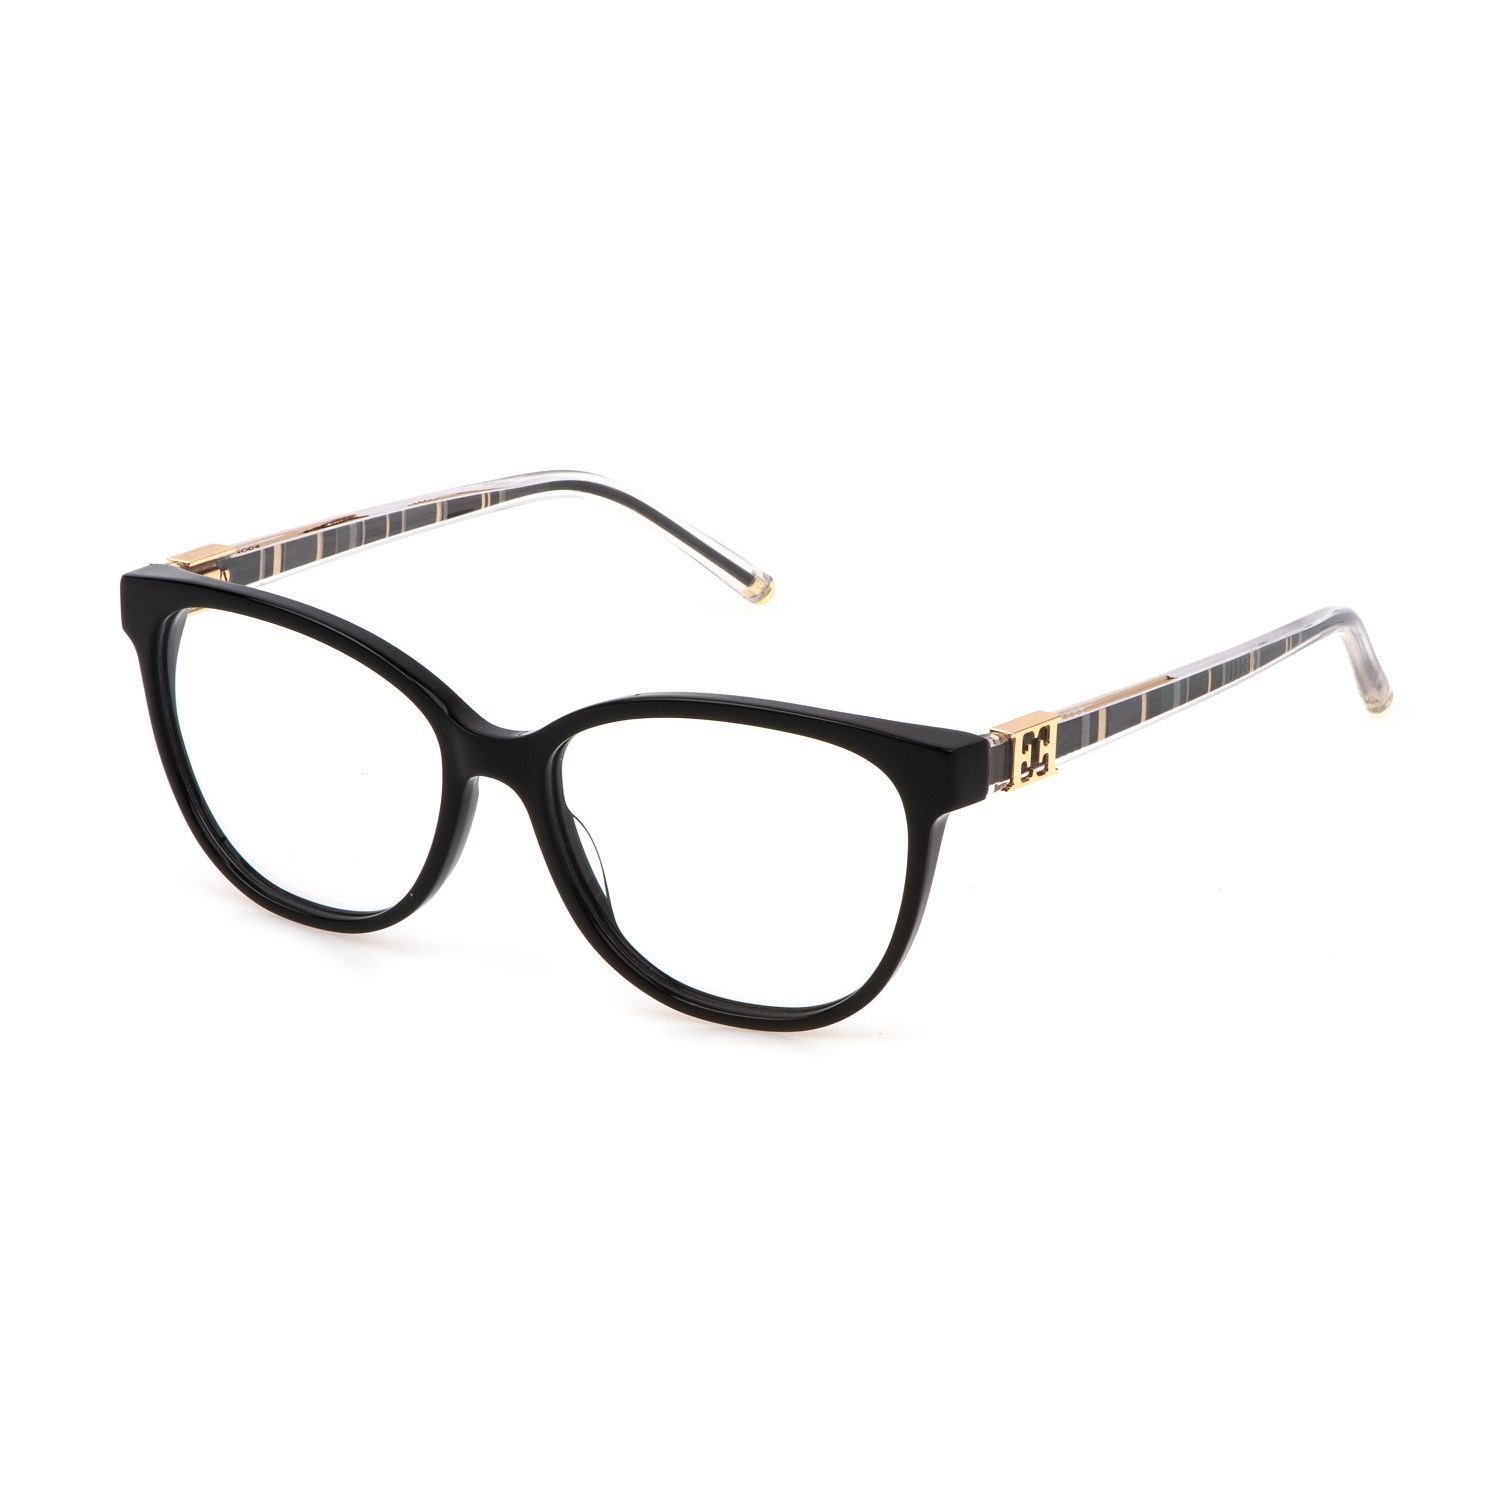 VESE34 Butterfly Eyeglasses 0700 - size 53